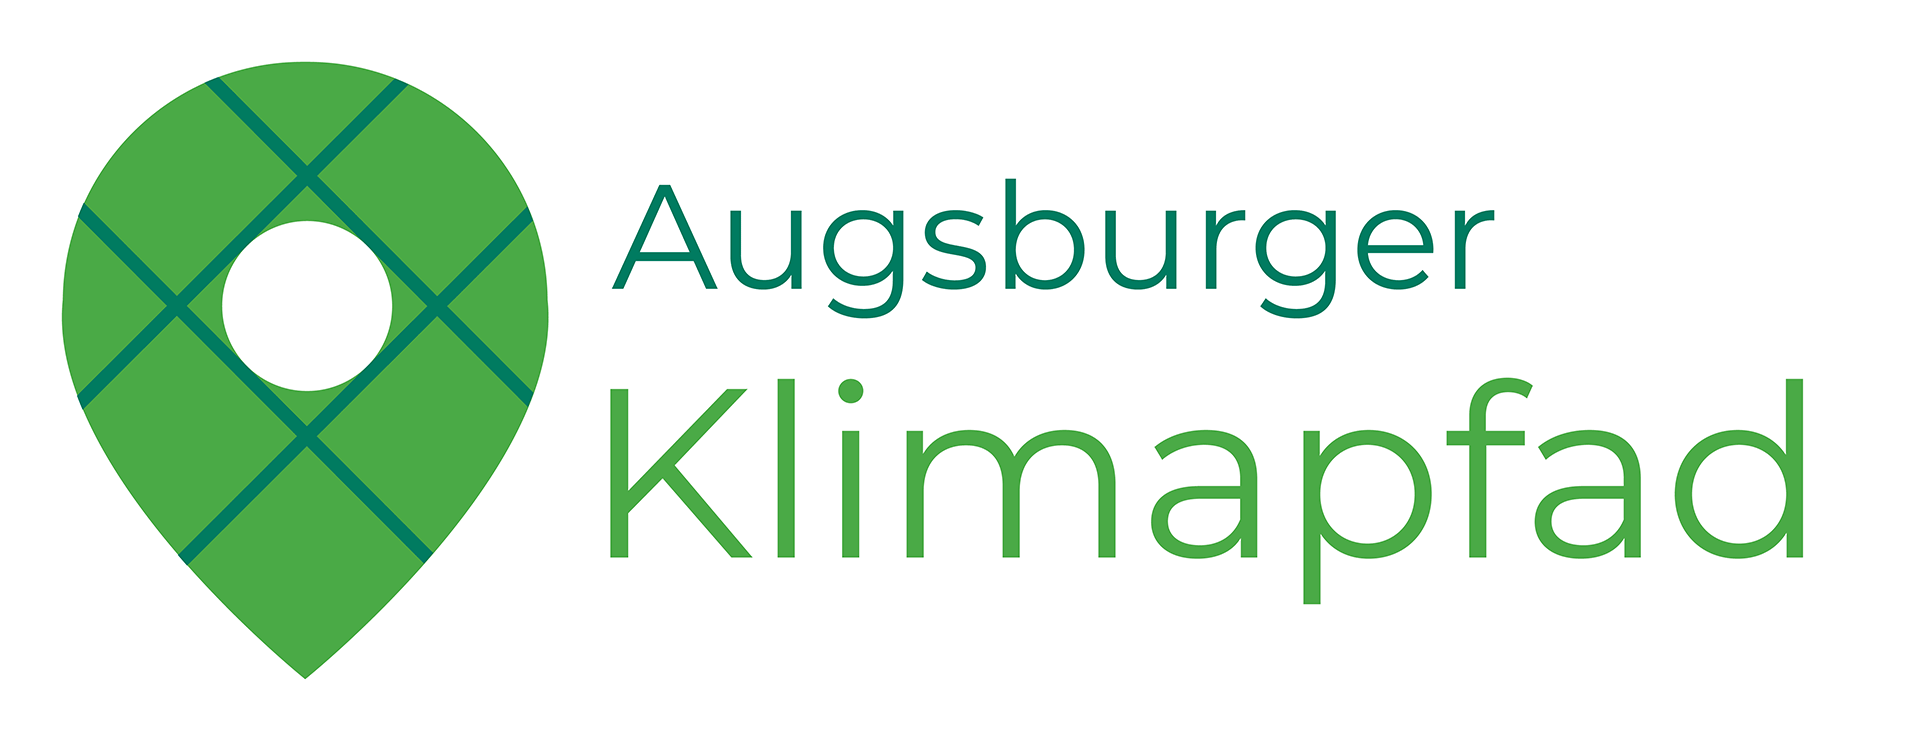 Logo Augsburger Klimalehrpfad © Friederike Glaubitz/Valentina Müller